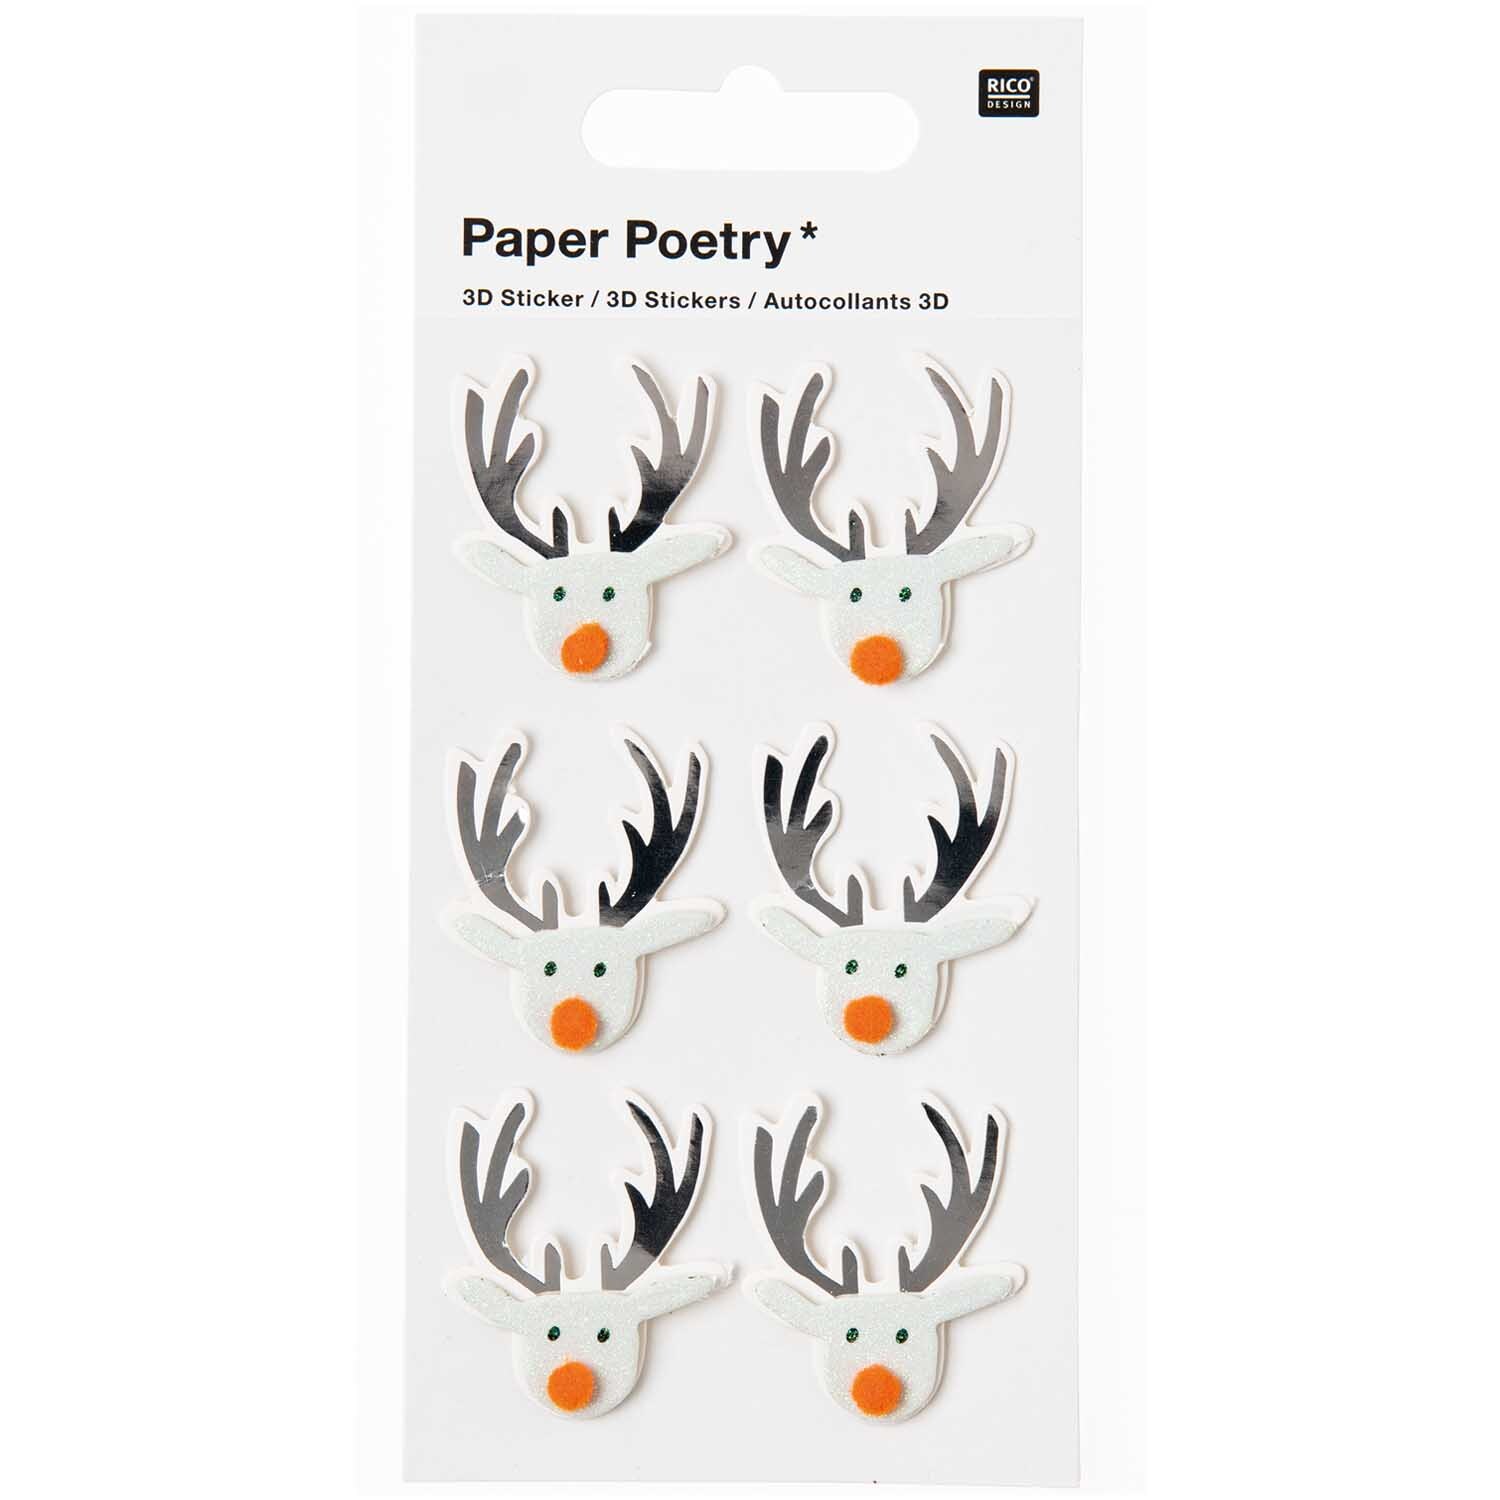 Paper Poetry 3D Sticker Rentier mint